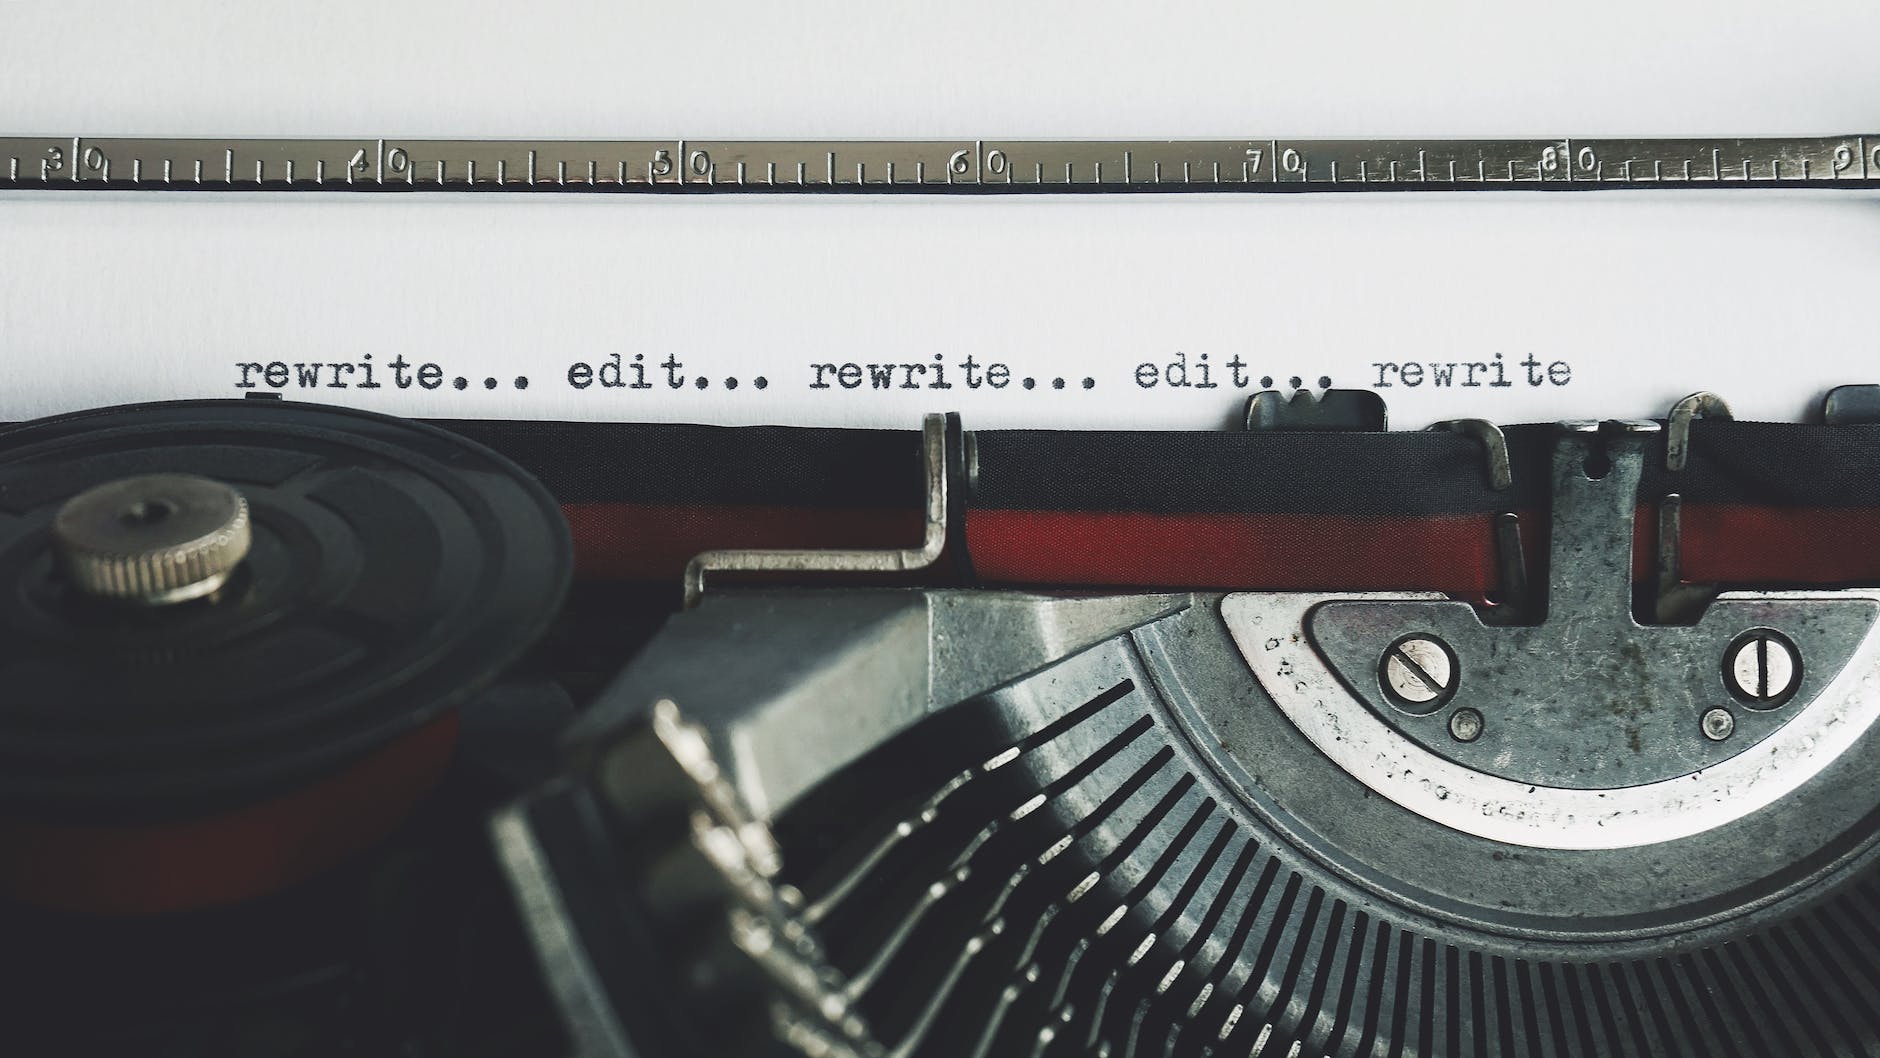 Tetap ngeblog sampai meNtog rewrite edit text on a typewriter